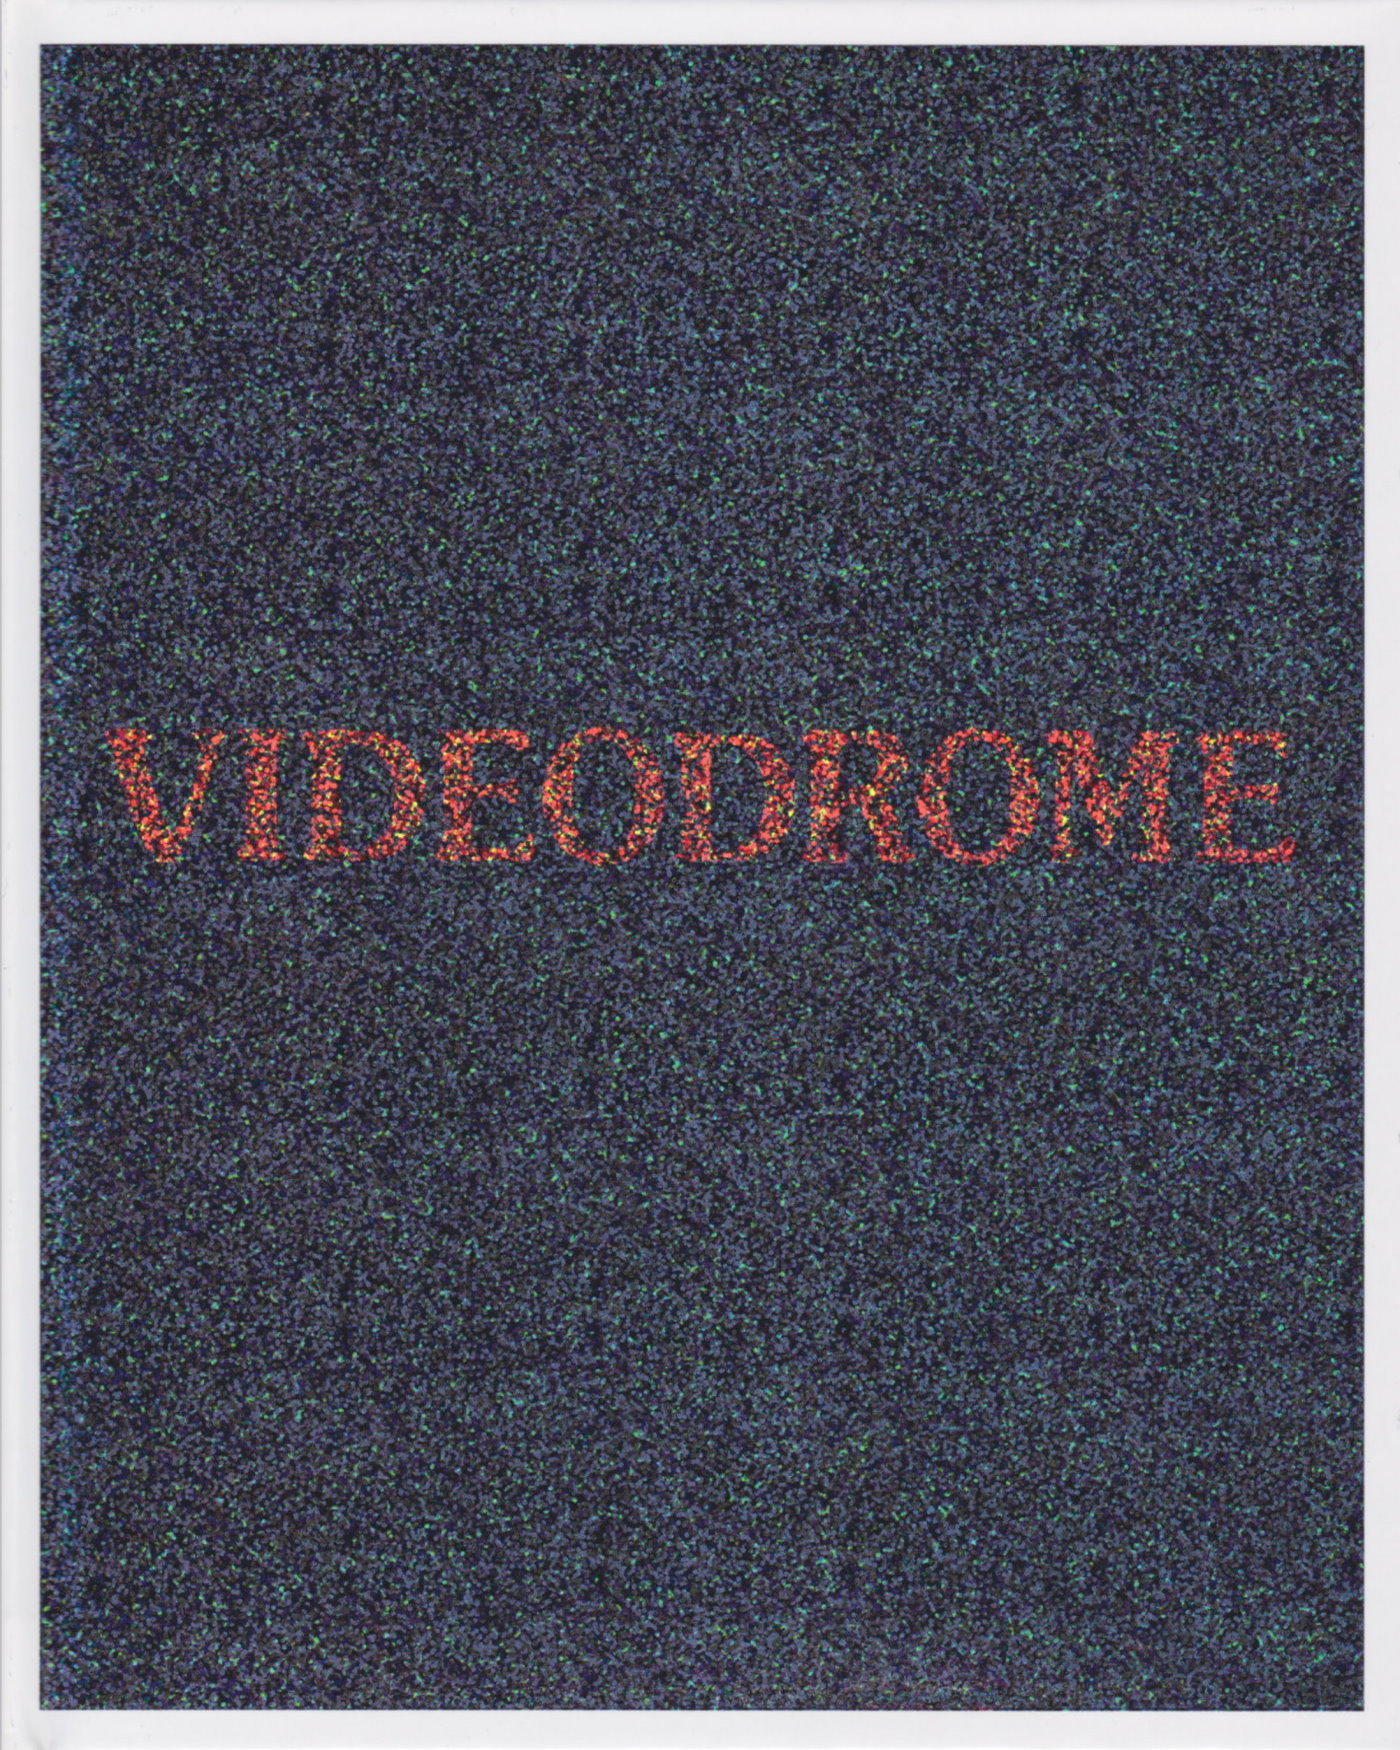 Cover - Videodrome.jpg